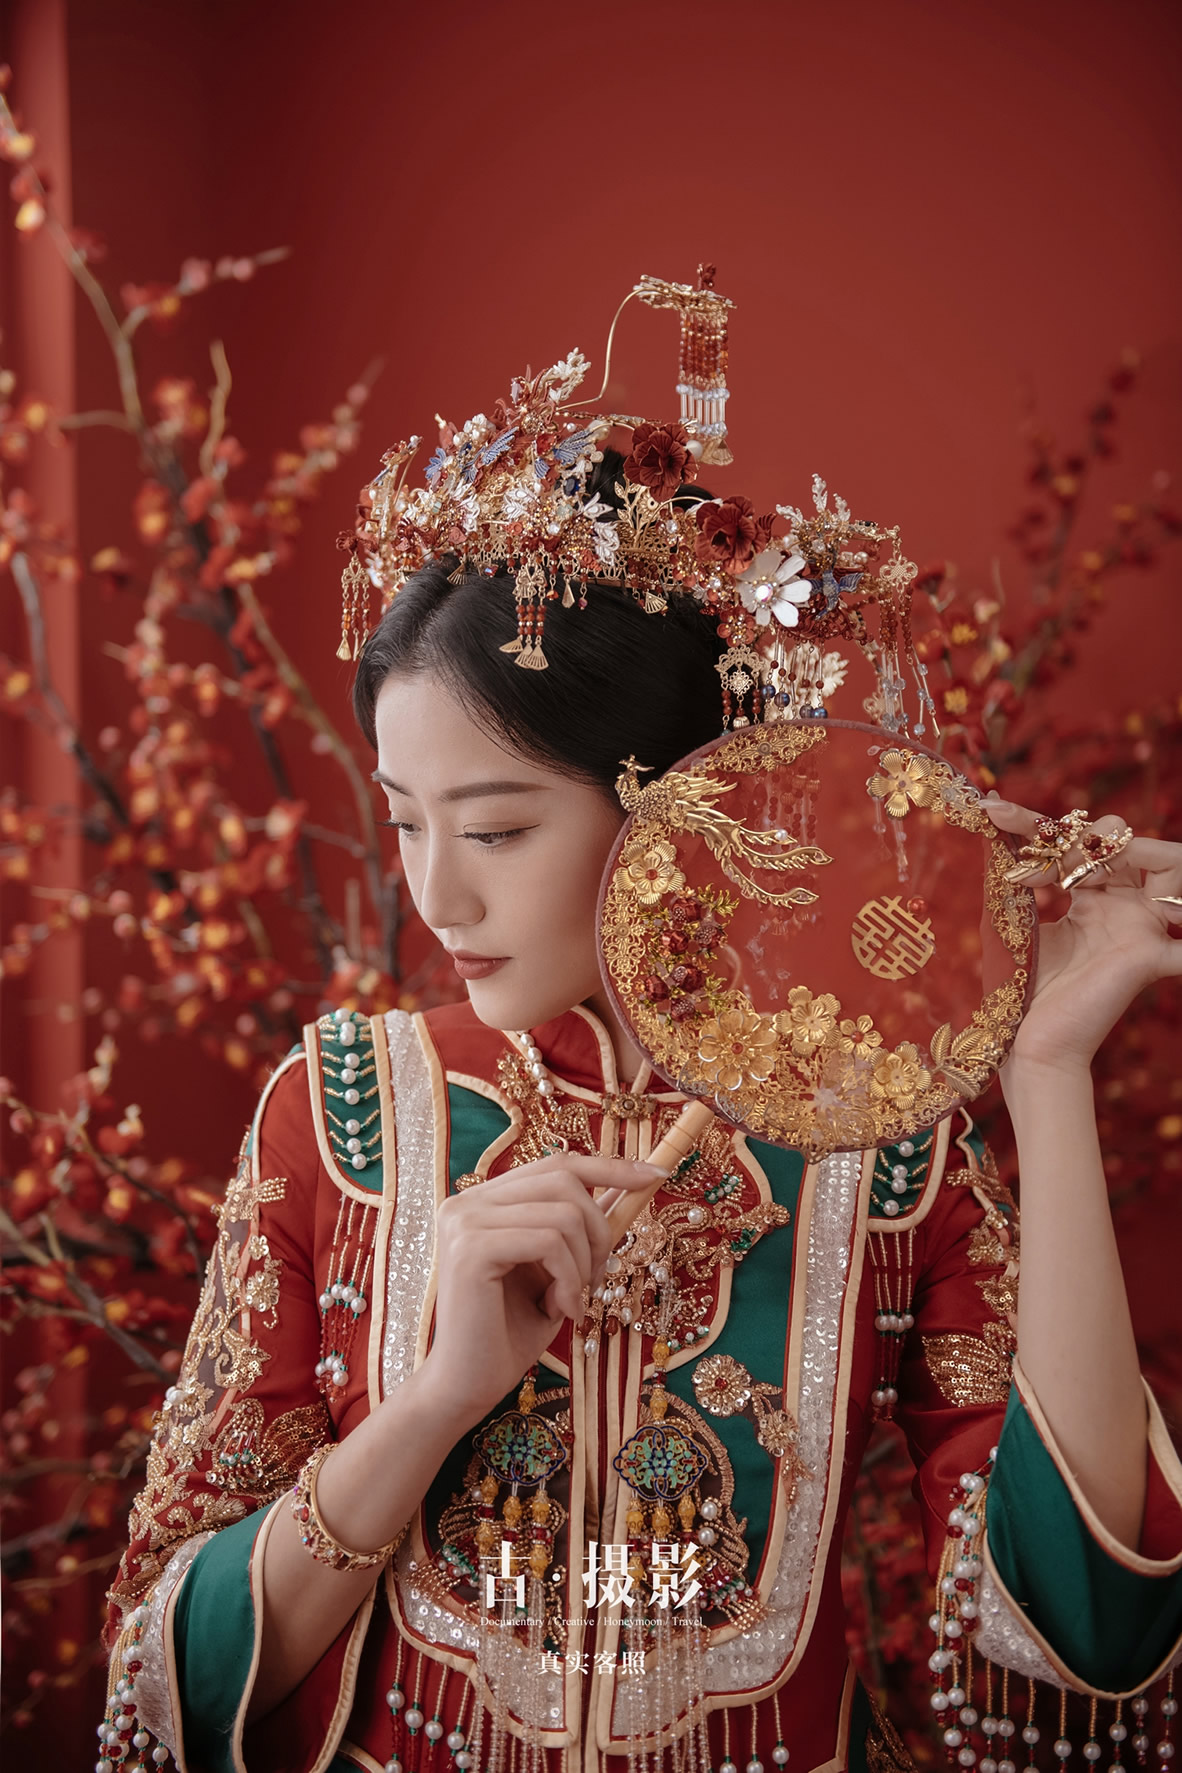 梁先生 连小姐 - 每日客照 - 广州婚纱摄影-广州古摄影官网